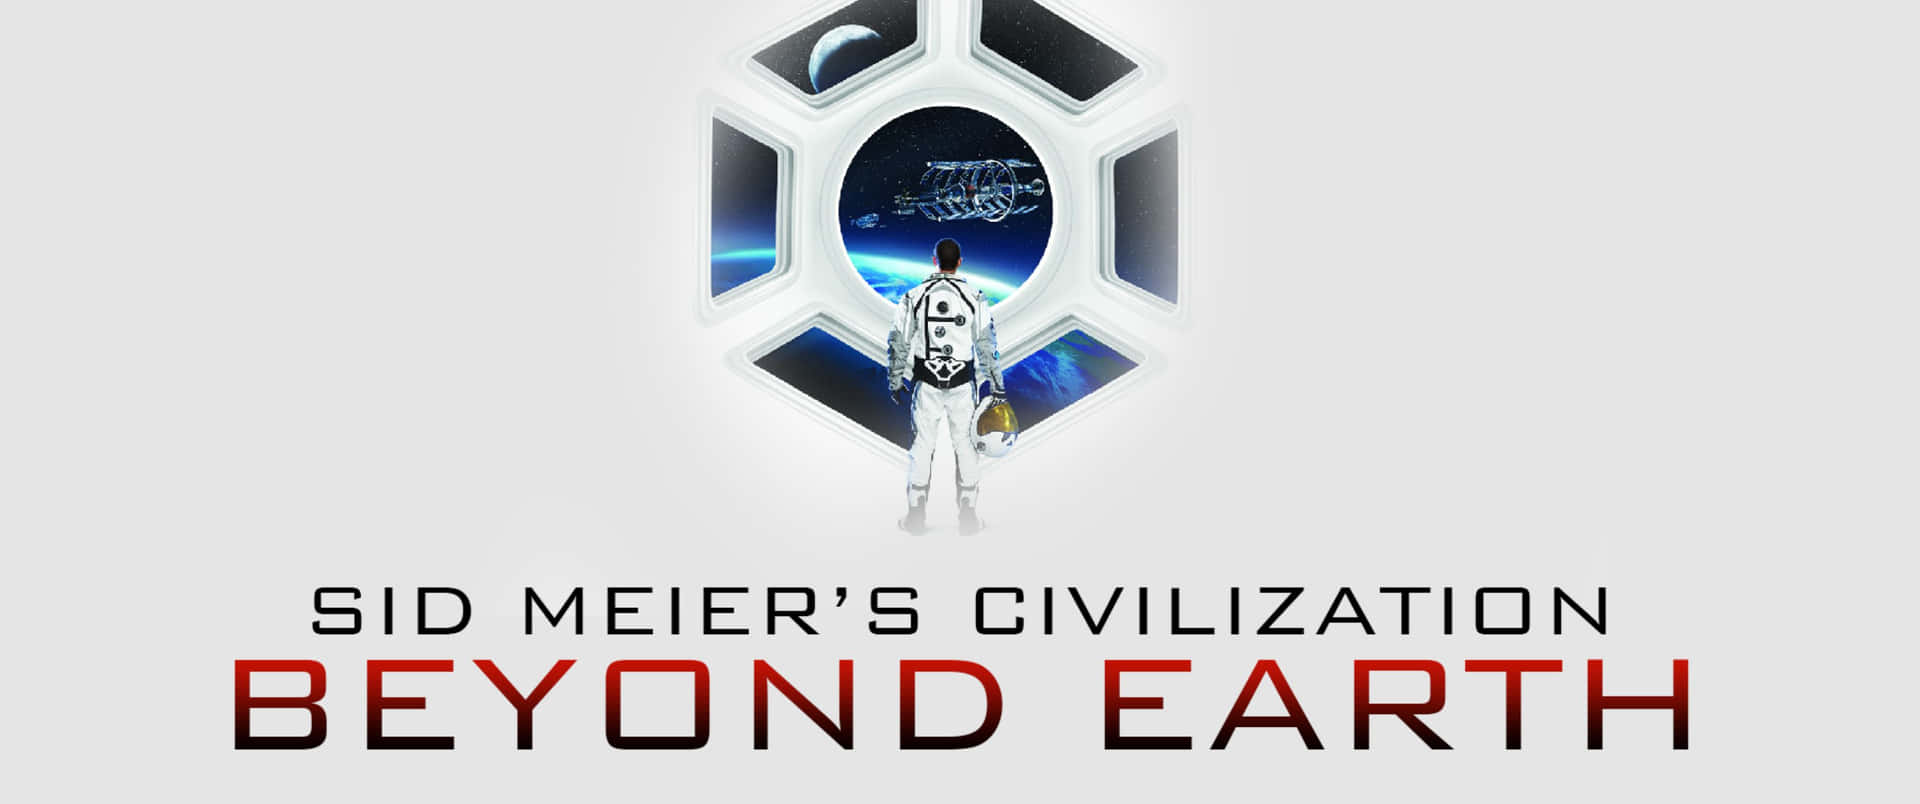 Sid Meier's Civilization Beyond Earth